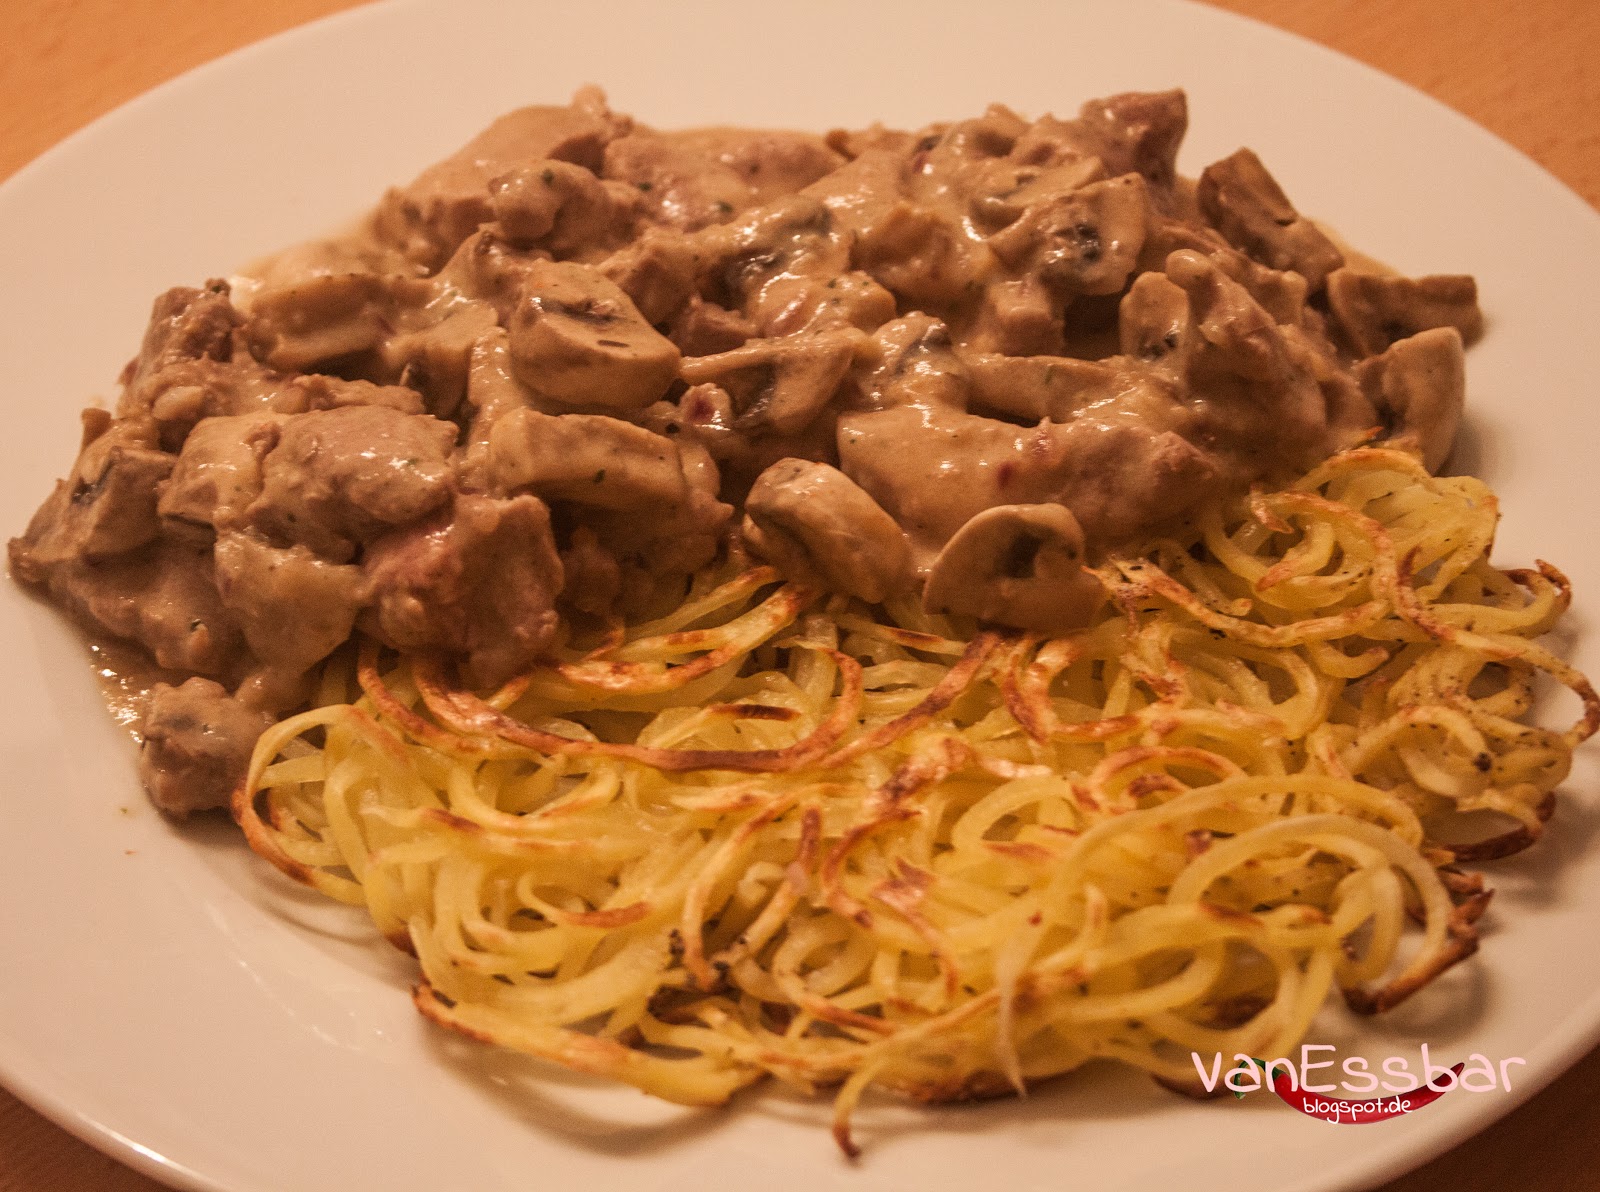 VanEssbar: Kartoffel-Spaghetti Rösti mit Geschnetzeltem vom Schwein